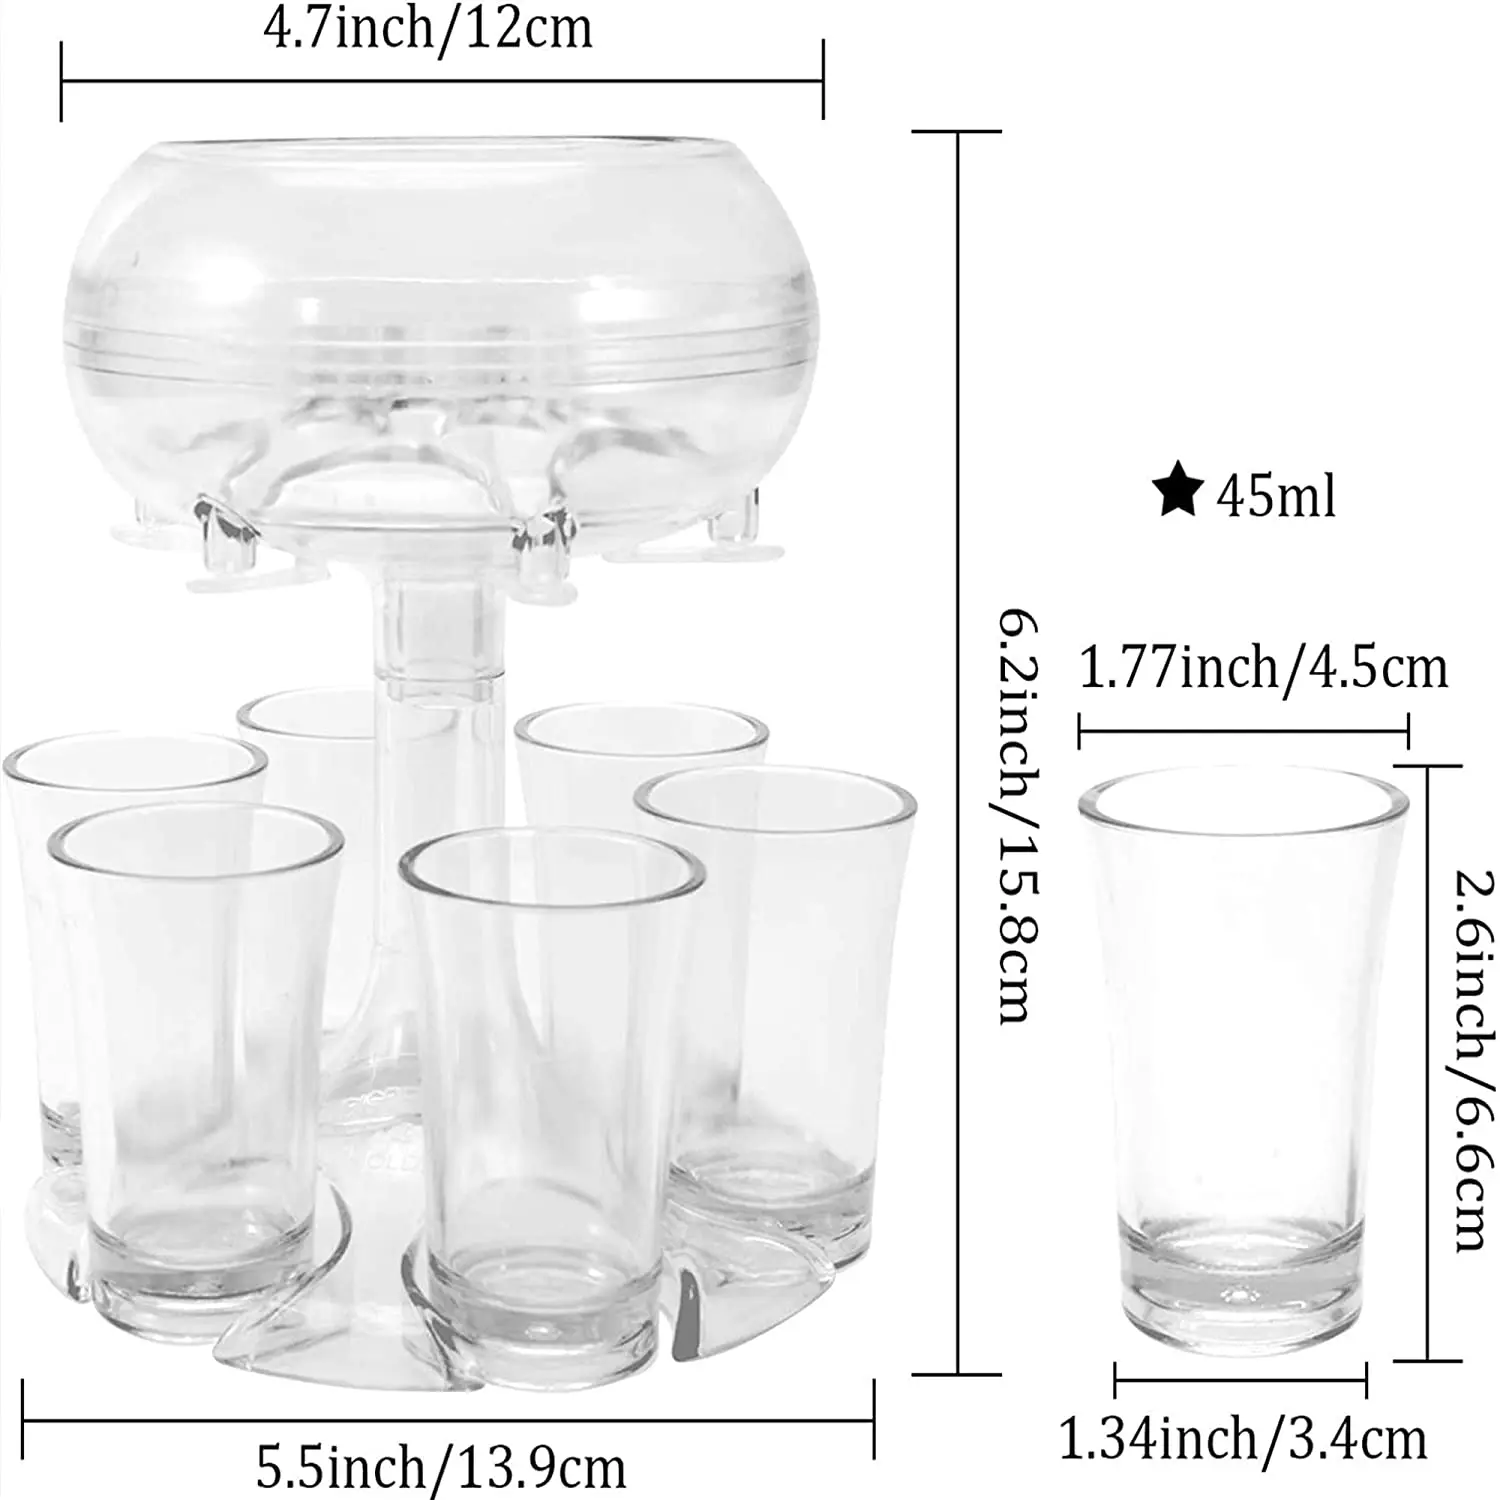 DHDH Sunny Dispensador de vasos de chupito, dispensador de líquidos  ajustable, vertedor de chupitos con 6 vasos acrílicos coloridos, adecuado  para